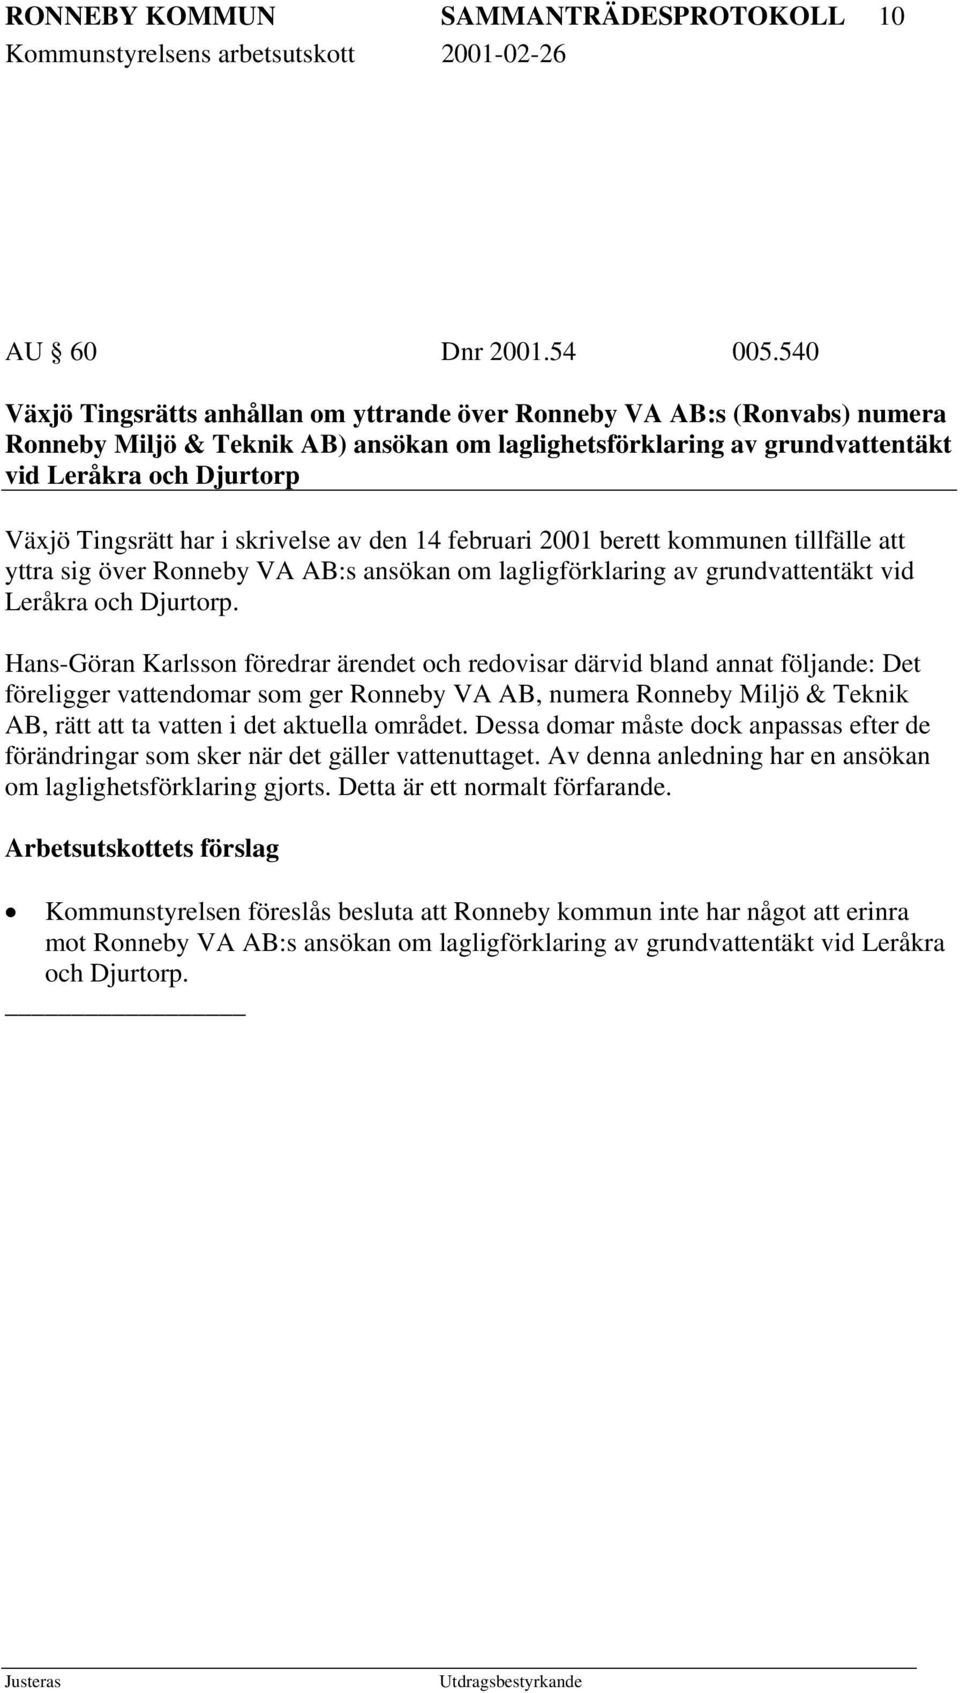 har i skrivelse av den 14 februari 2001 berett kommunen tillfälle att yttra sig över Ronneby VA AB:s ansökan om lagligförklaring av grundvattentäkt vid Leråkra och Djurtorp.